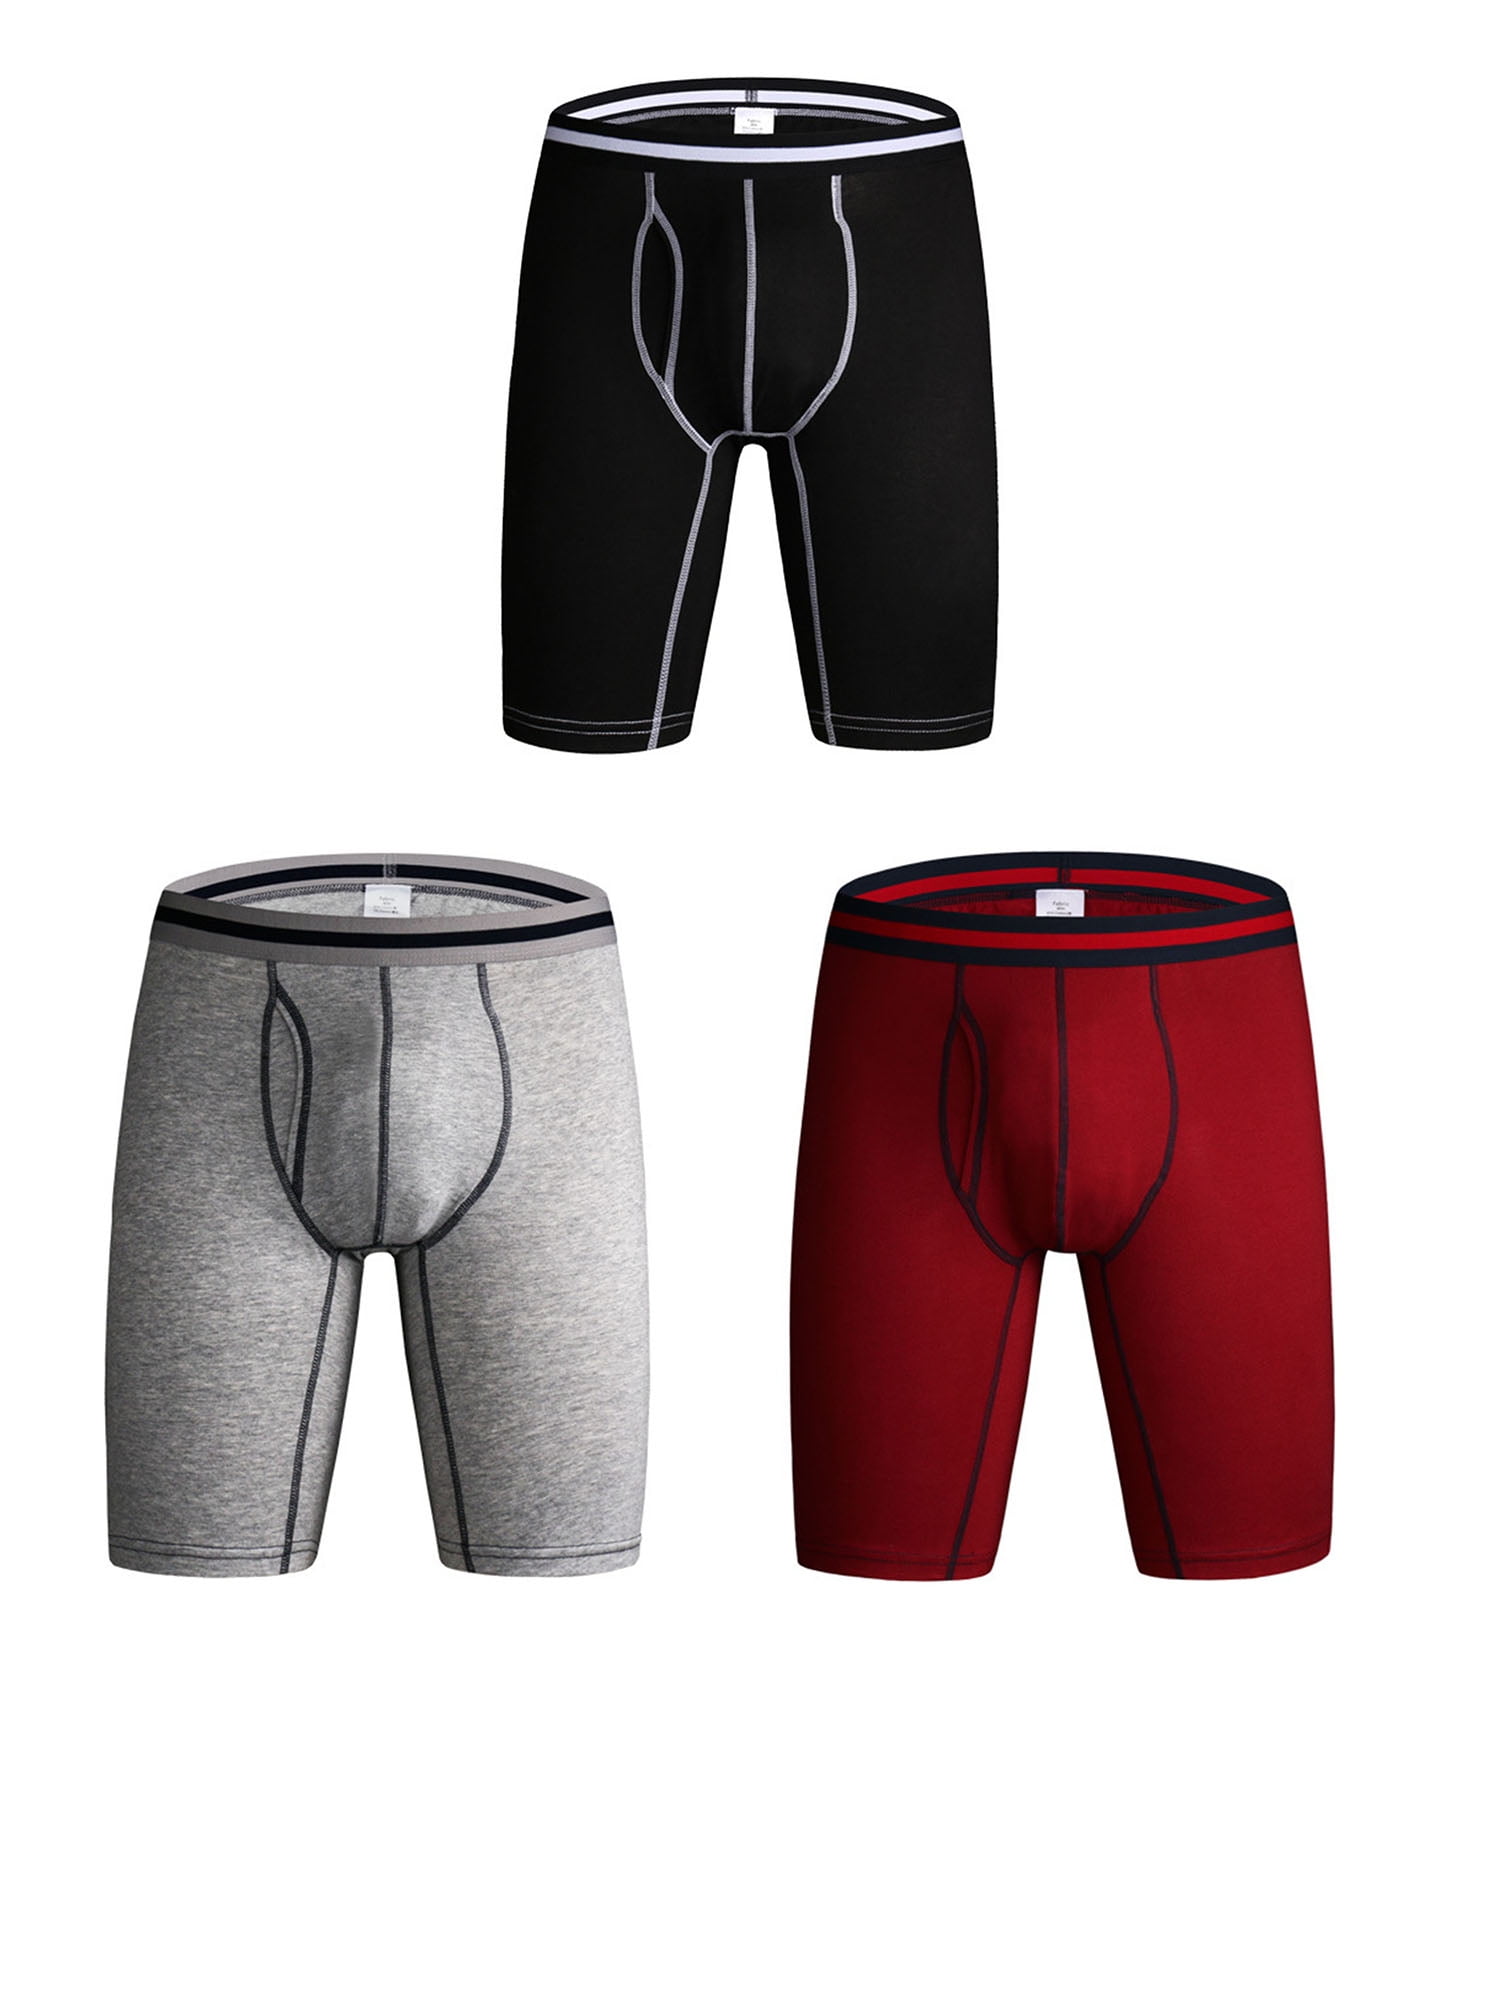 KEFITEVD Mens 4-Pack Underwear Stripe Cotton Boxer Briefs